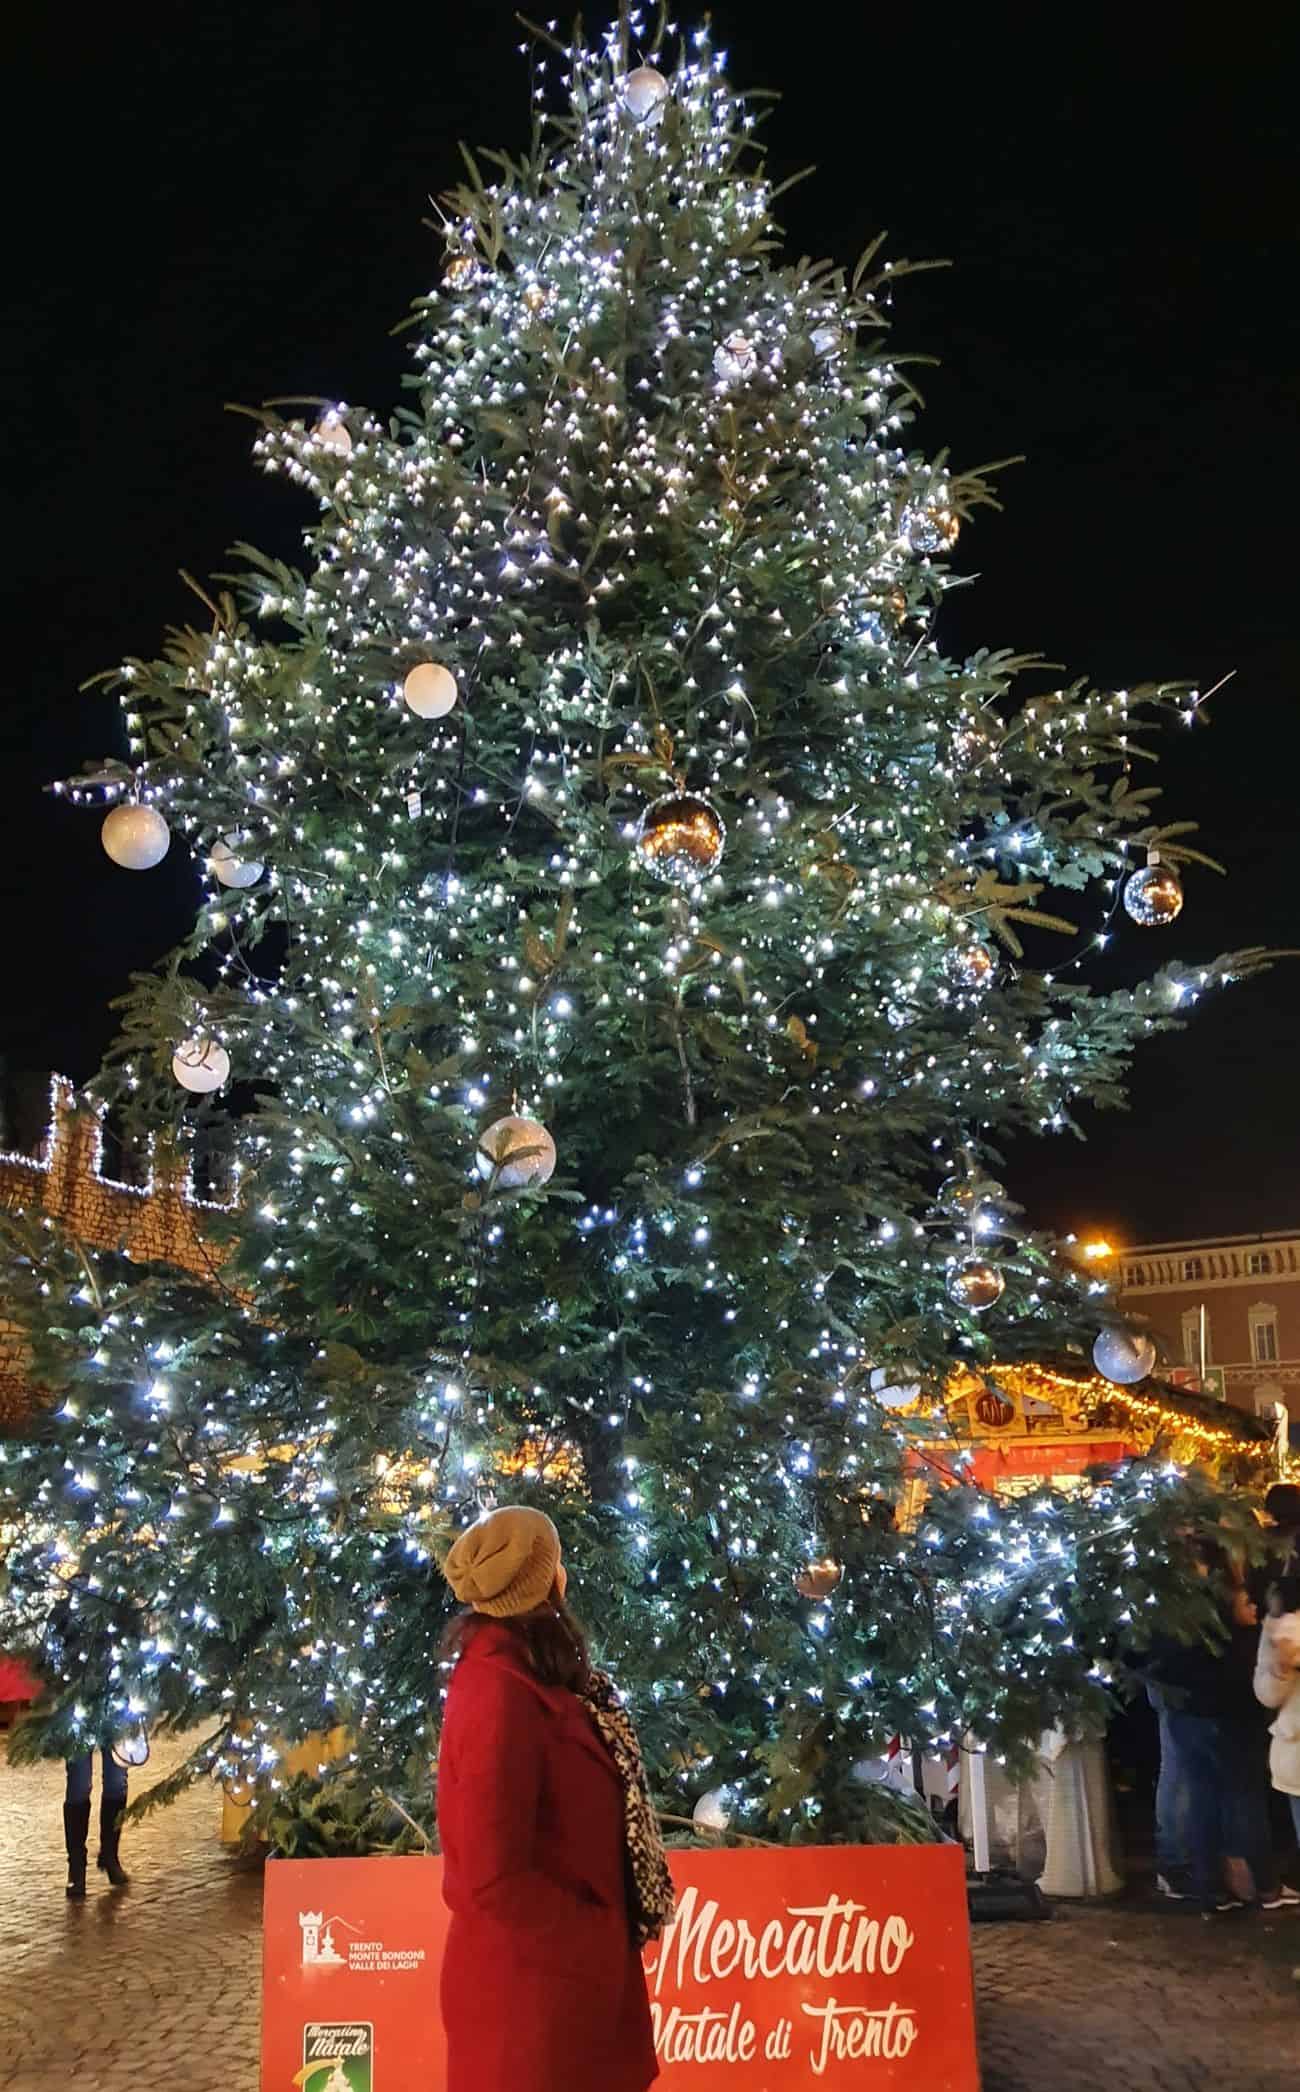 Mercatini di Natale in Piazza Cesare Battisti